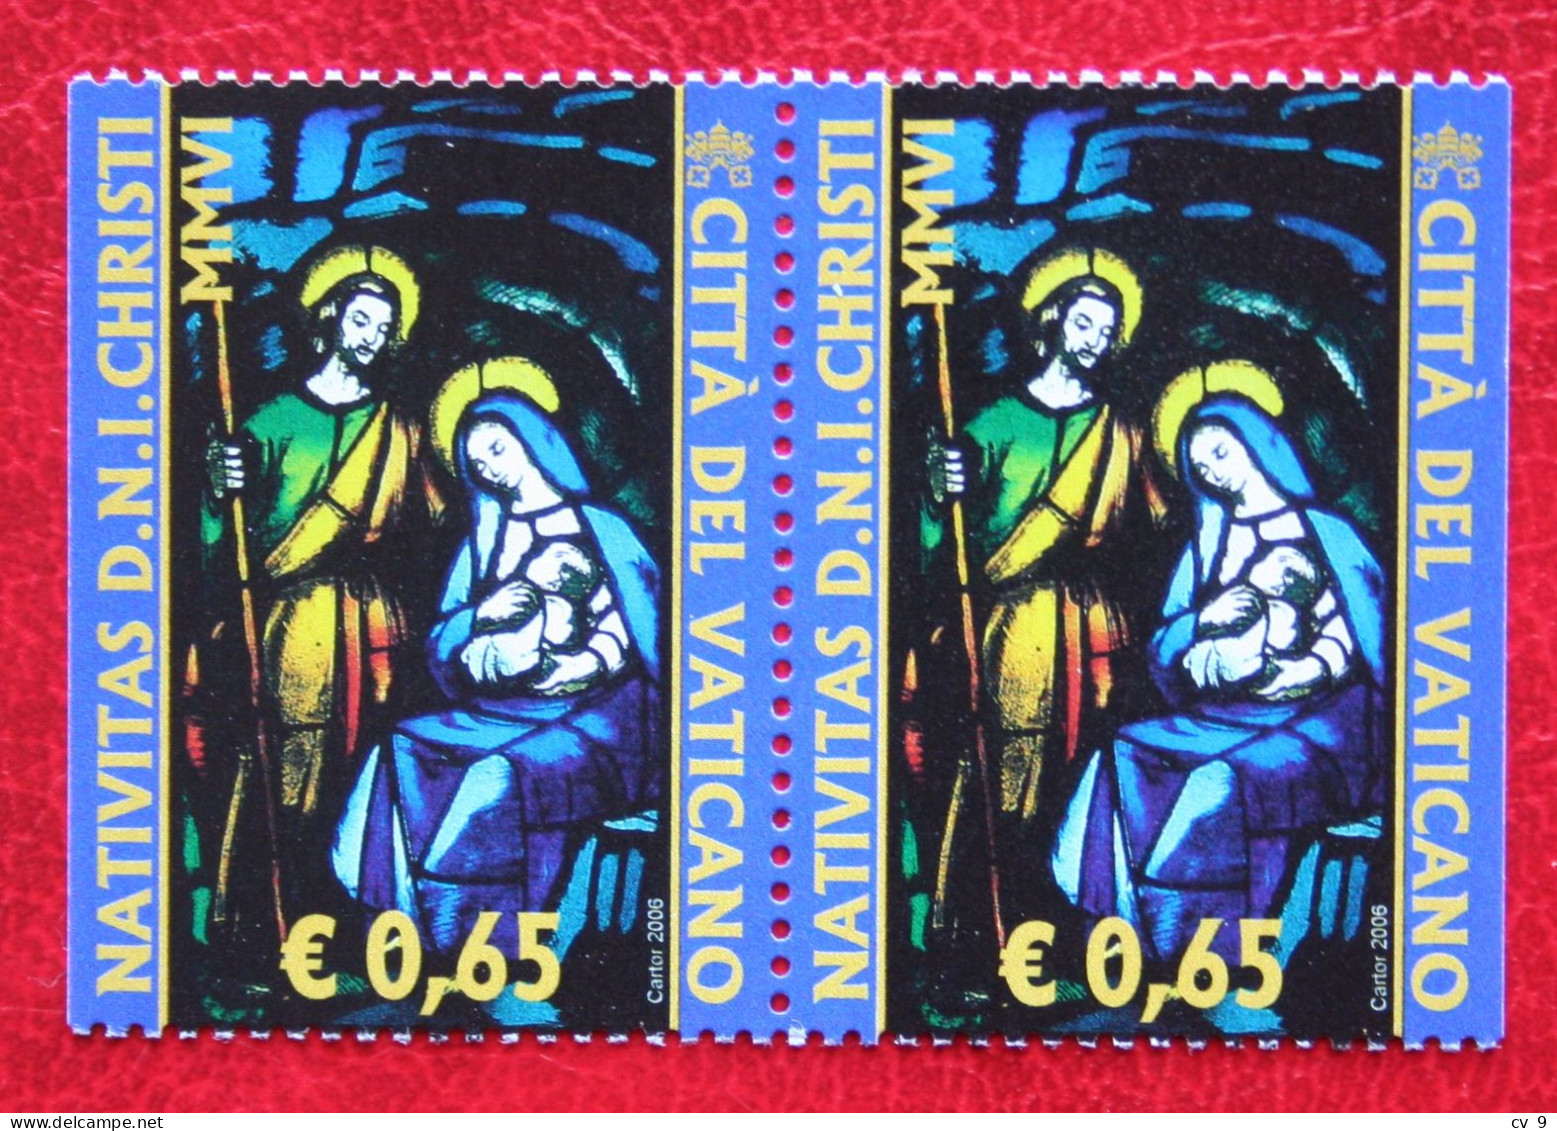 Natale Weihnachten Xmas Noel Kerst Booklet Stamps 2006 Mi 1567 Dl Dr Yv - POSTFRIS / MNH / **  VATICANO VATICAN VATICAAN - Unused Stamps